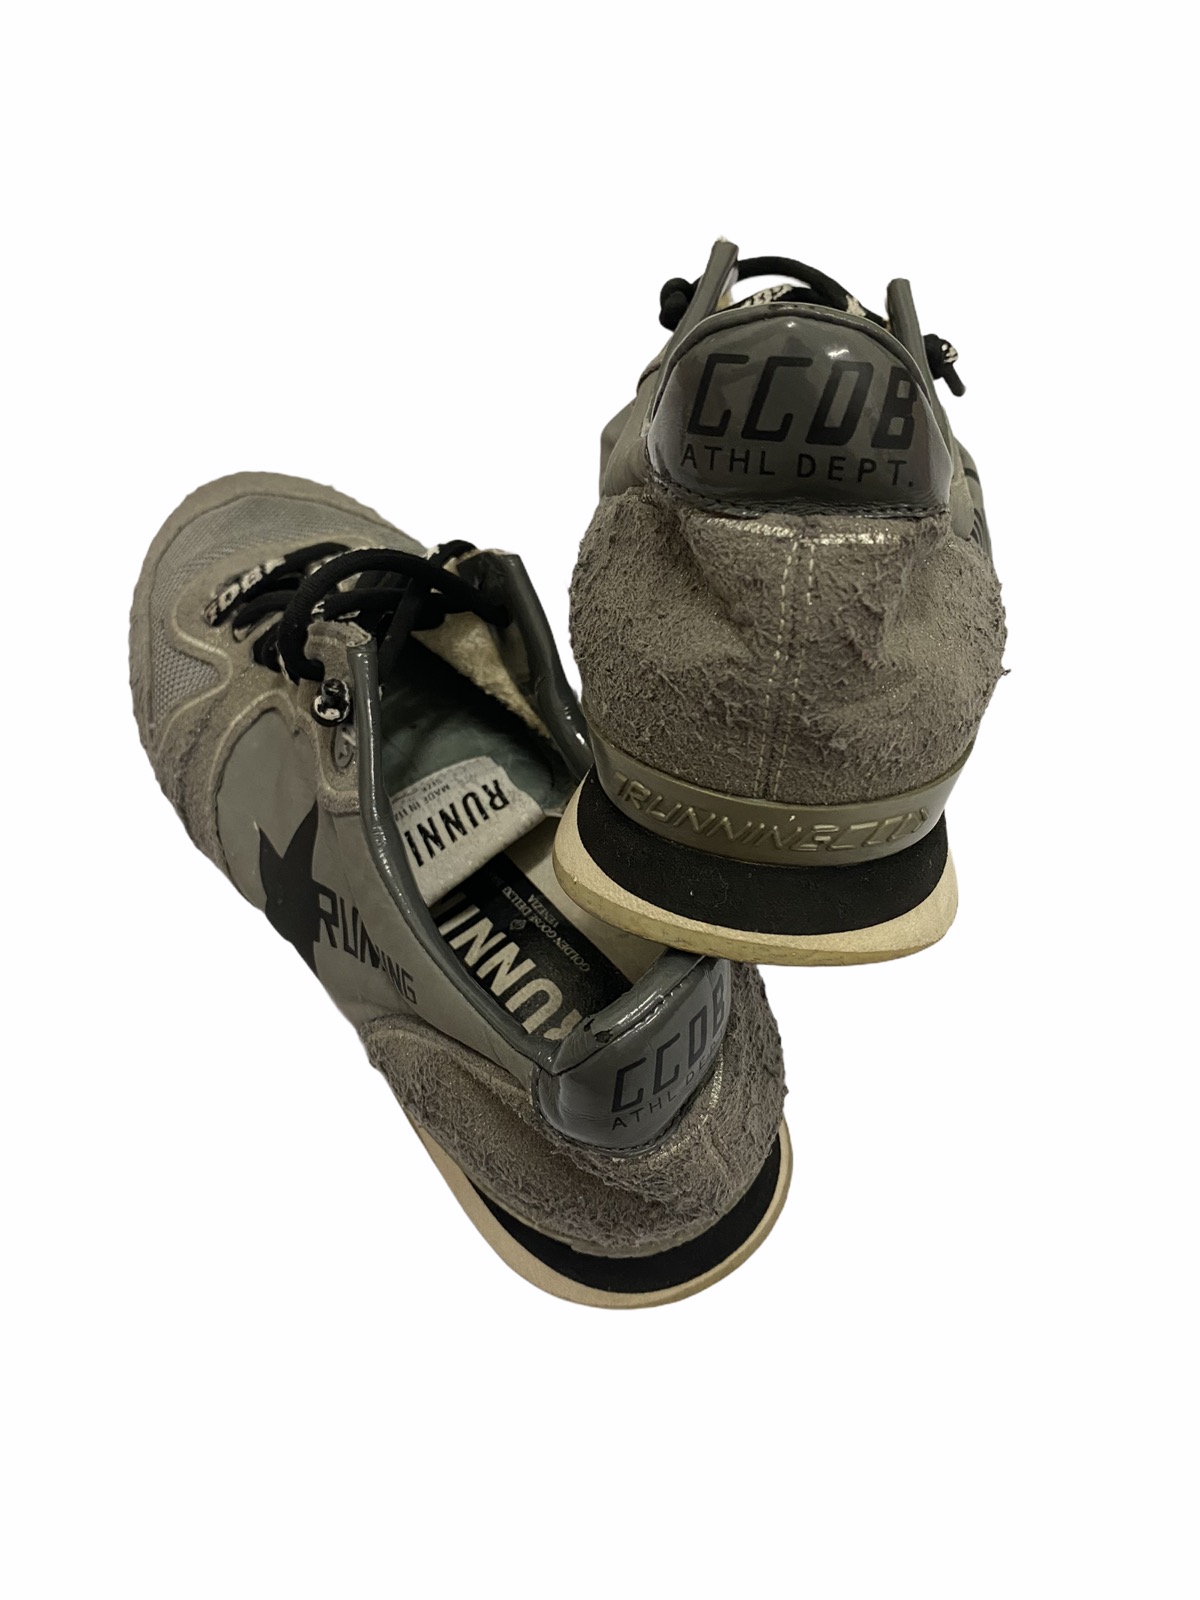 GGDB Running Shoes Size Eu39 - 5